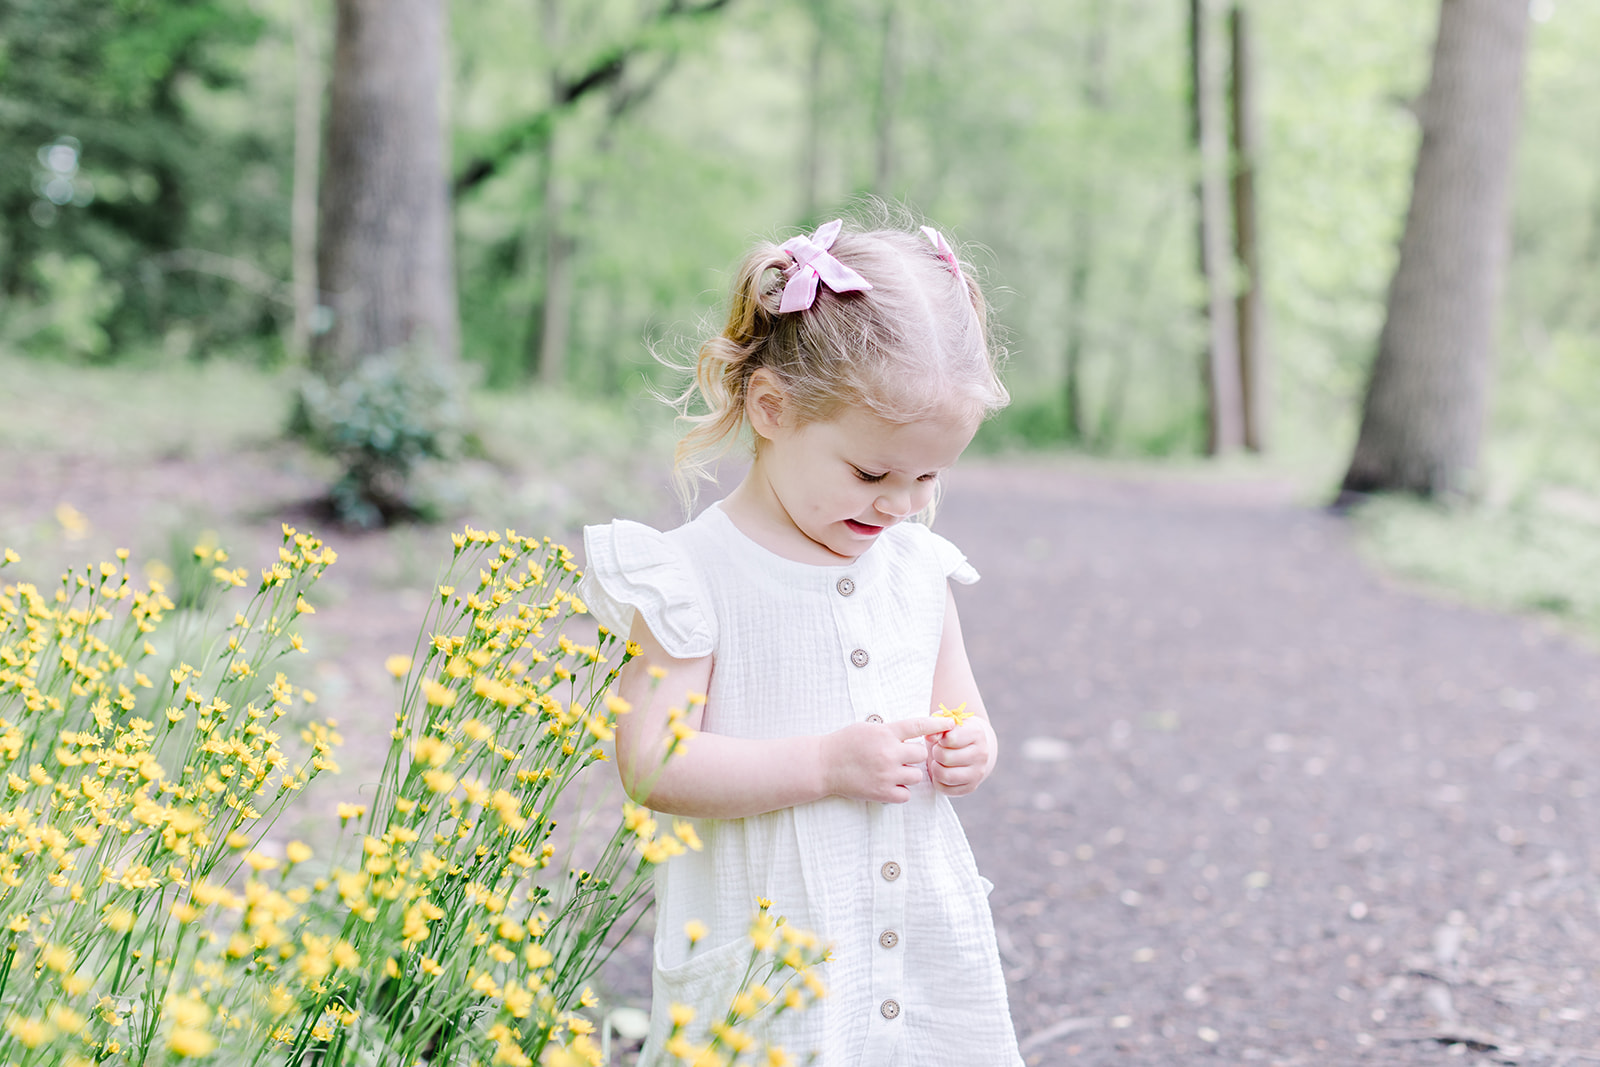 toddler picking flowers